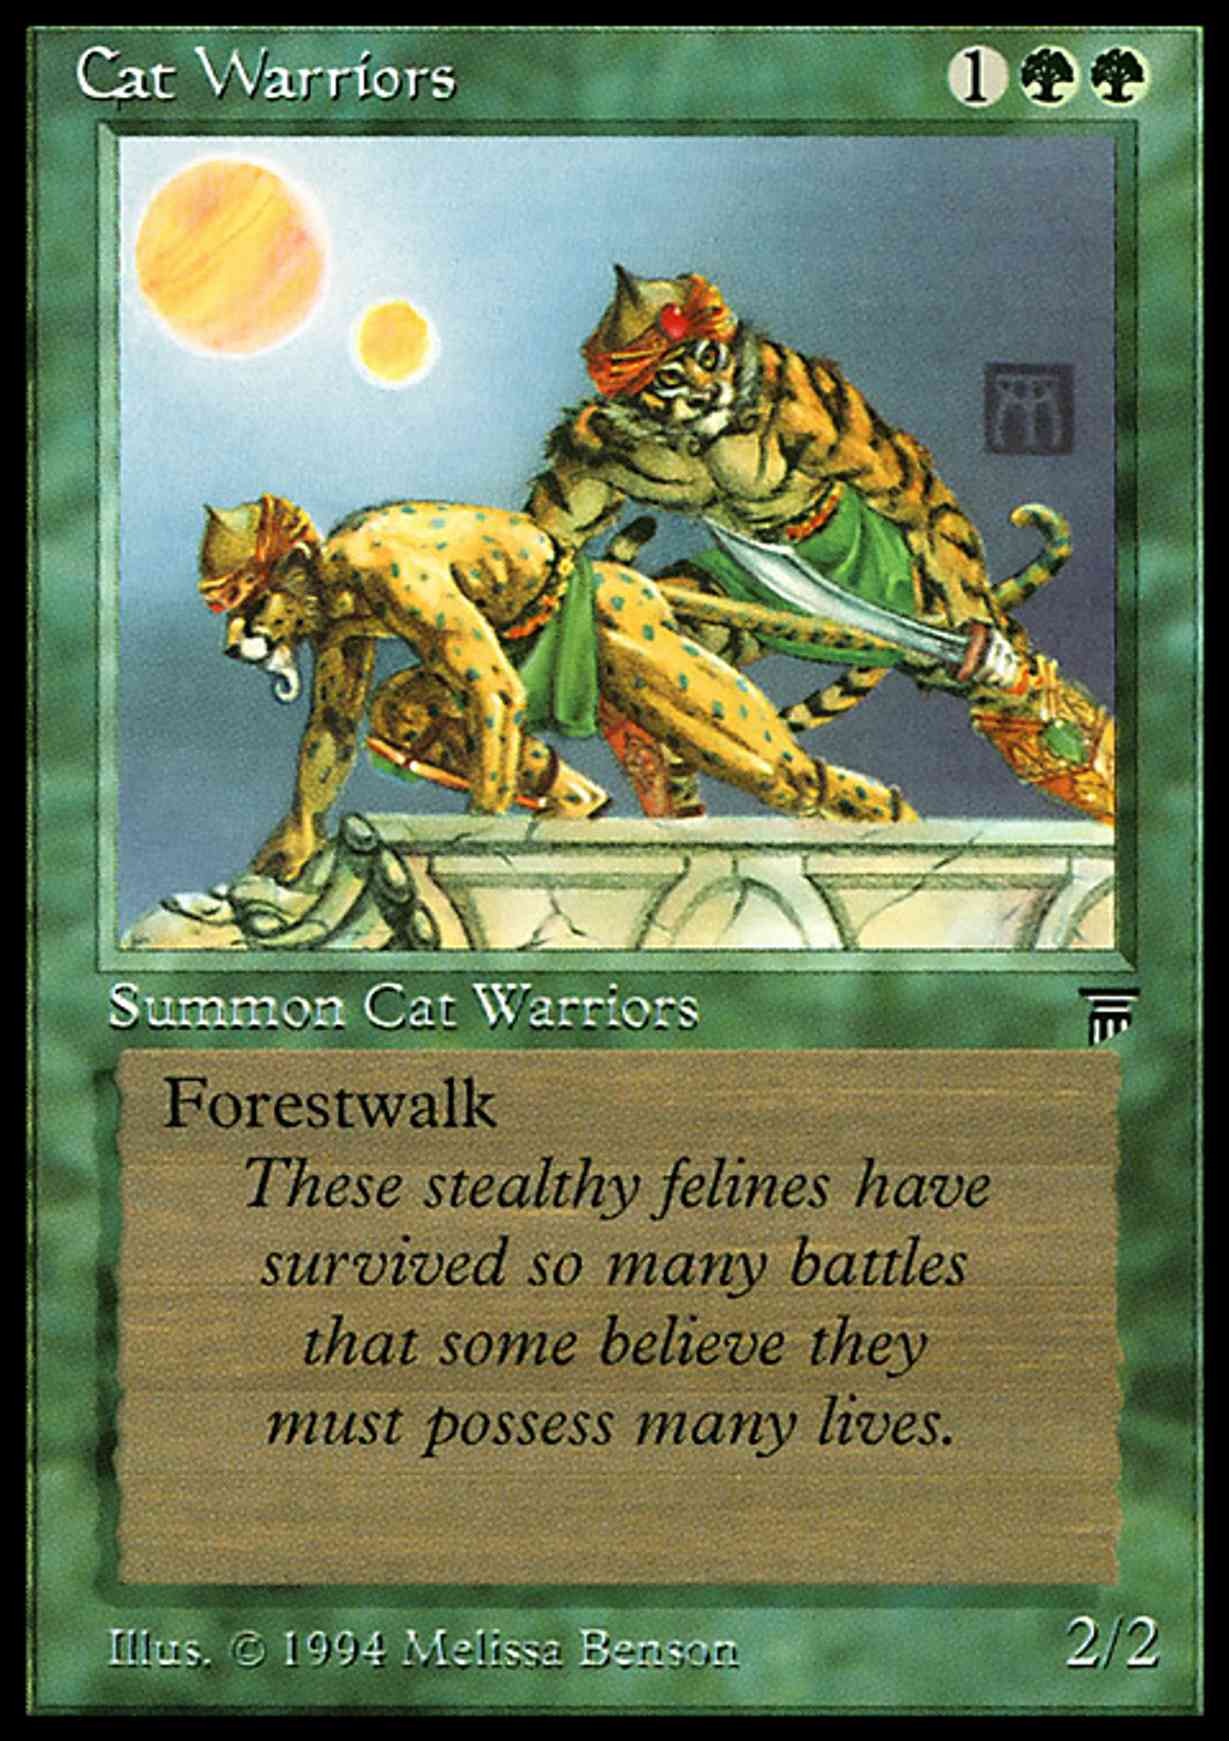 Cat Warriors magic card front